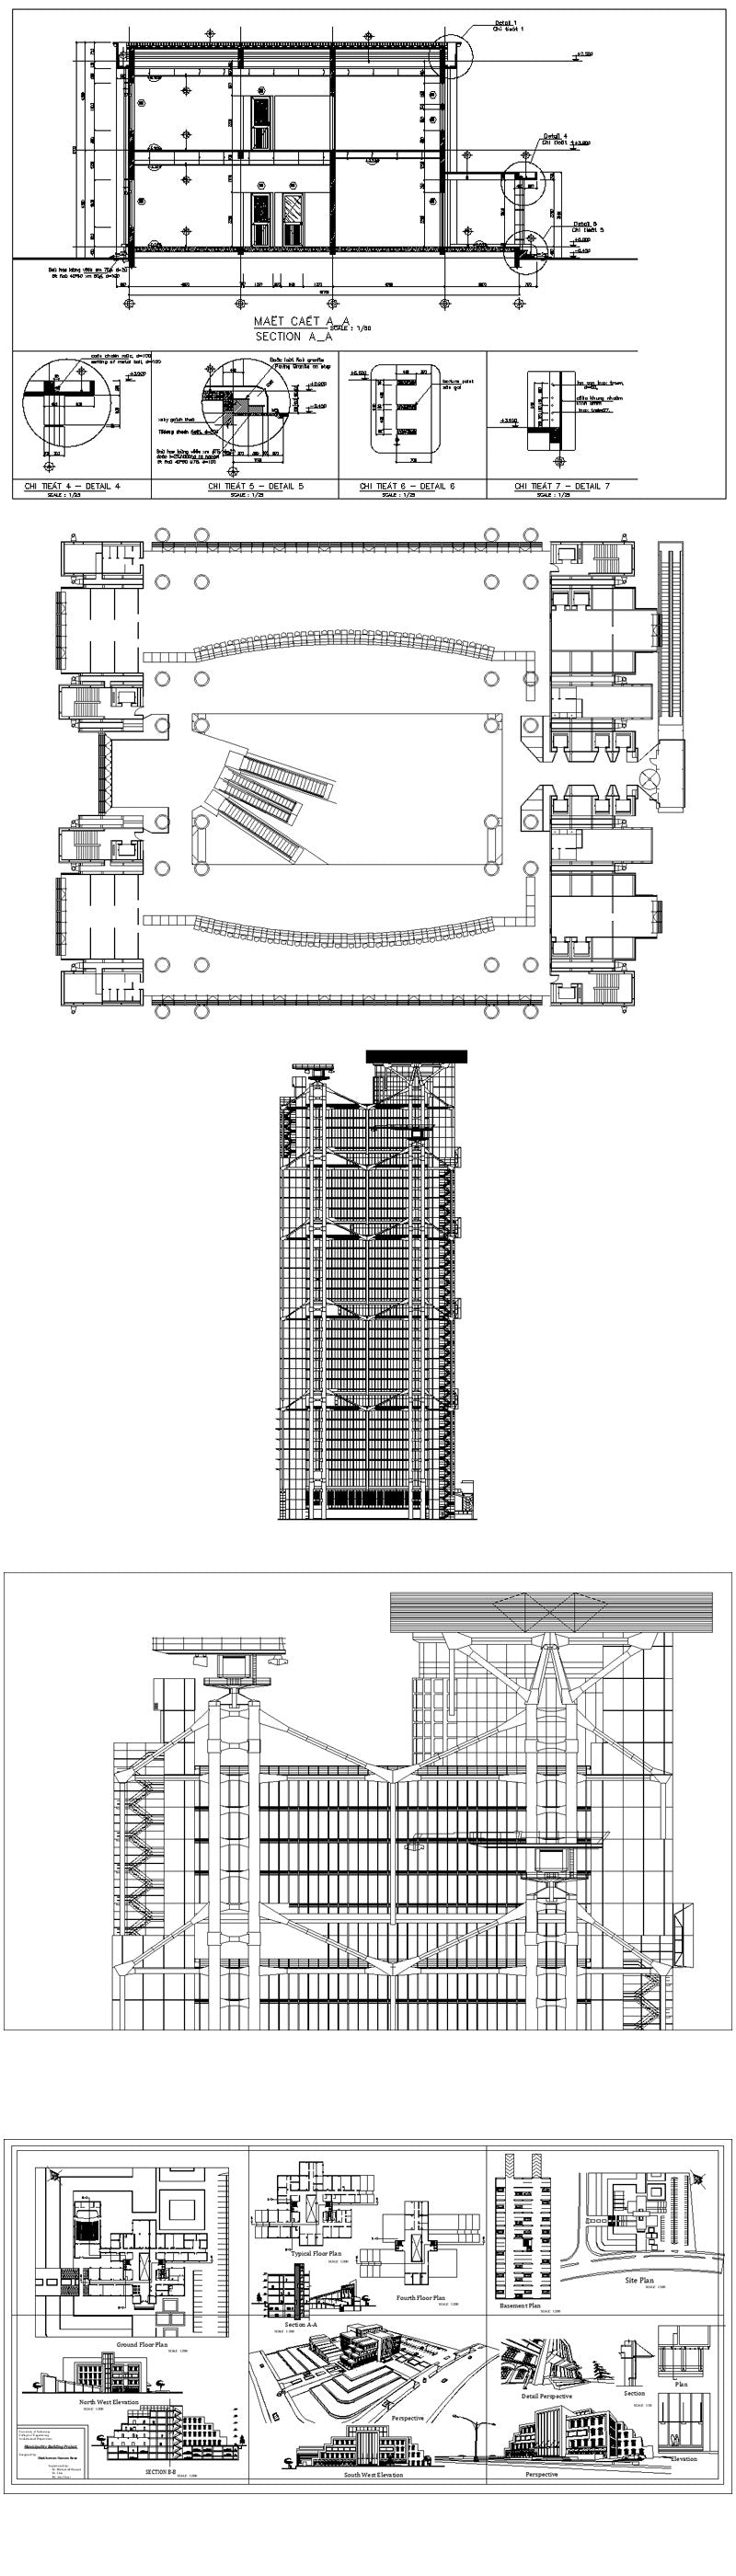 Bank Building Commercial Bank Floor Plan Design